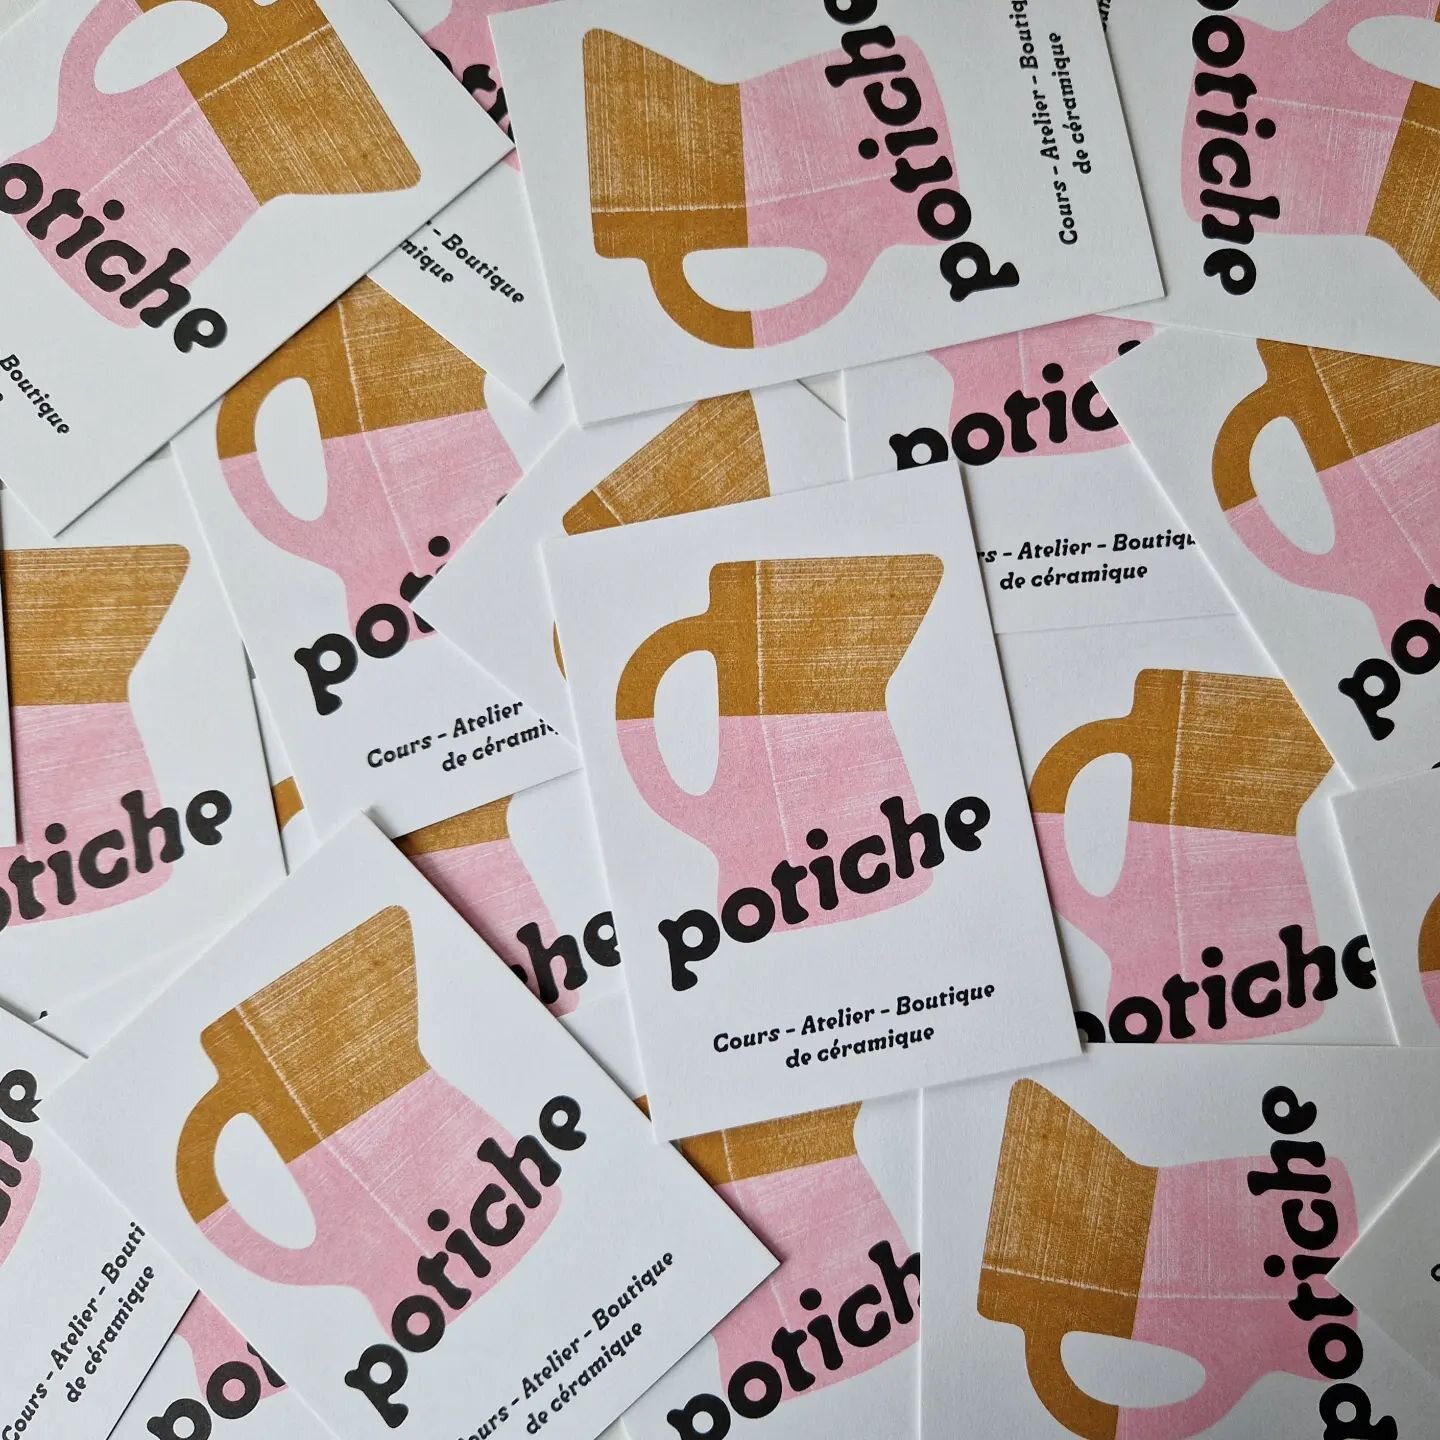 Les jolis flyers de Potiche
R&eacute;alis&eacute;s par les best @facetofacedesign
On est fan 😍
.
.
.
#flyers #poticheclubdeceramique #brand  #identity #c&eacute;ramique #pottery #uccle